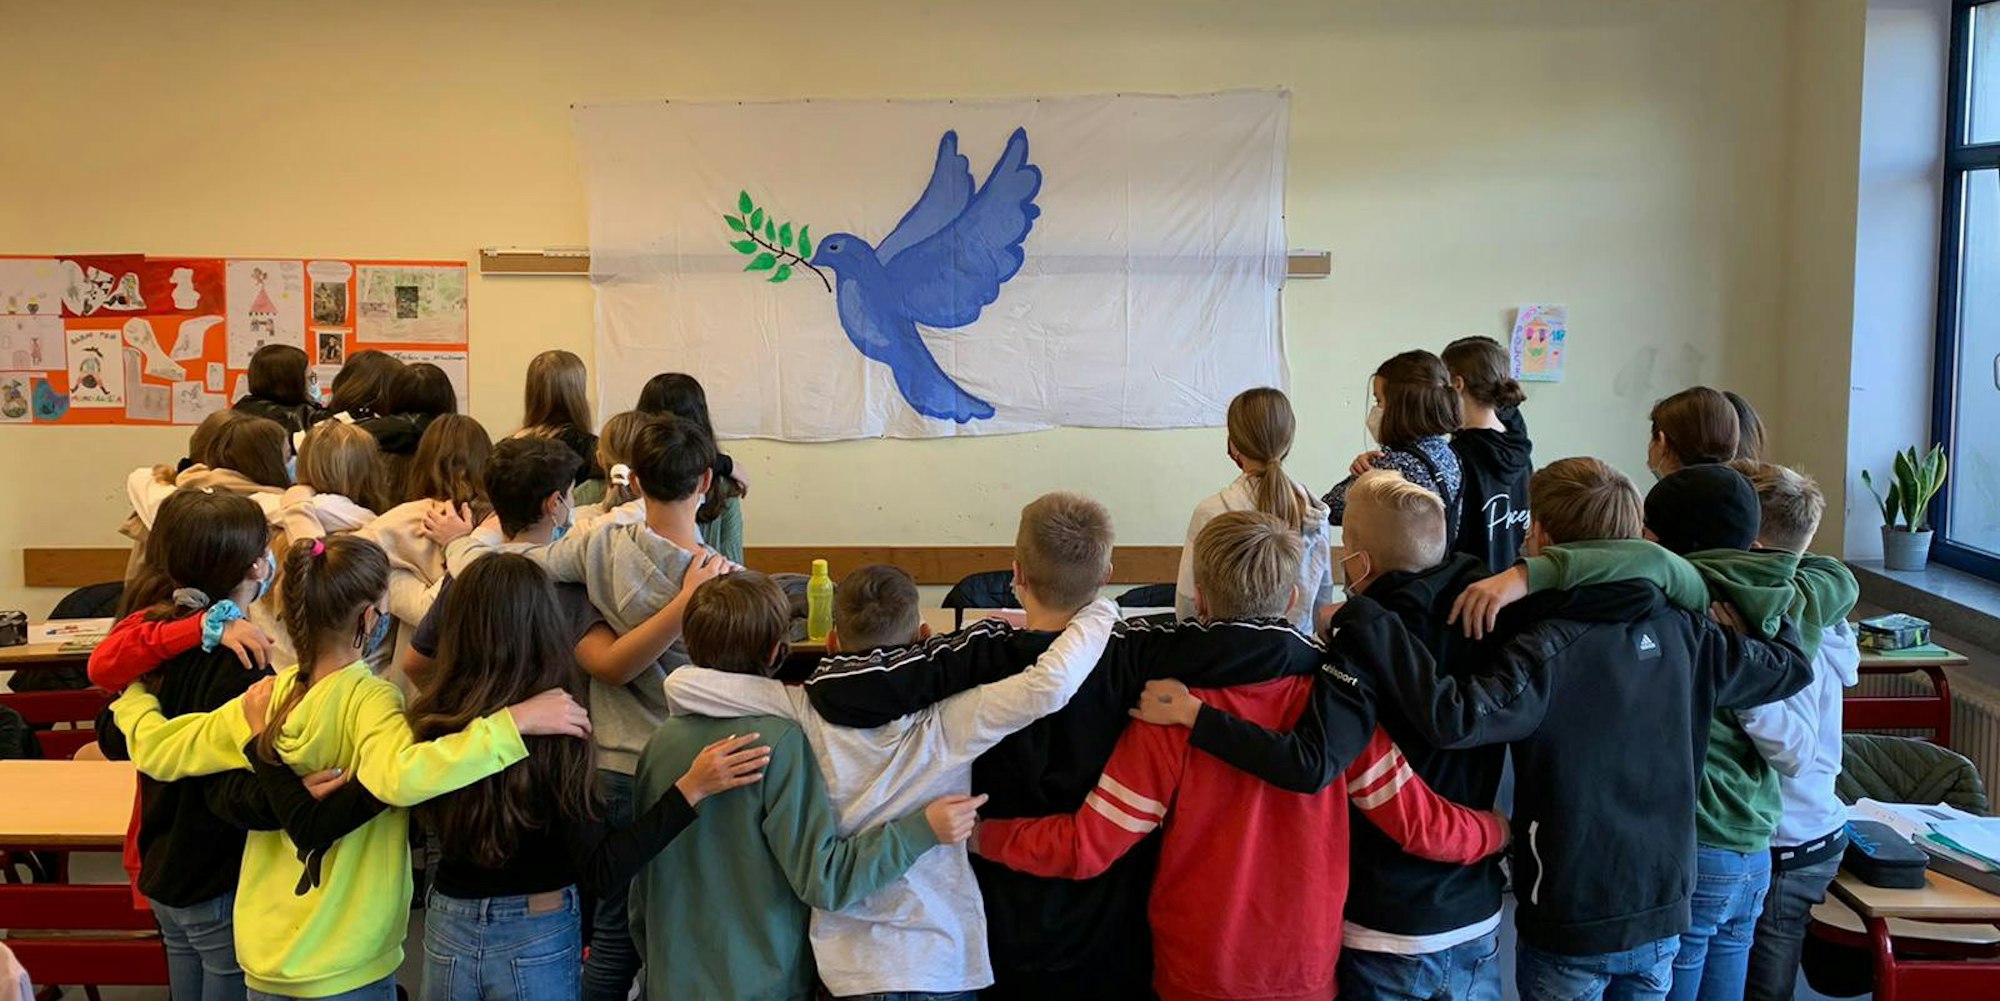 Die Gesamtschülerinnen und Gesamtschüler der Klasse 7d der Papst-Johannes-XXIII.-Gesamtschule versammeln sich vor einer Friedenstaube. Für ihre Lehrerin Birgit Mayer war das ein bewegender Moment.